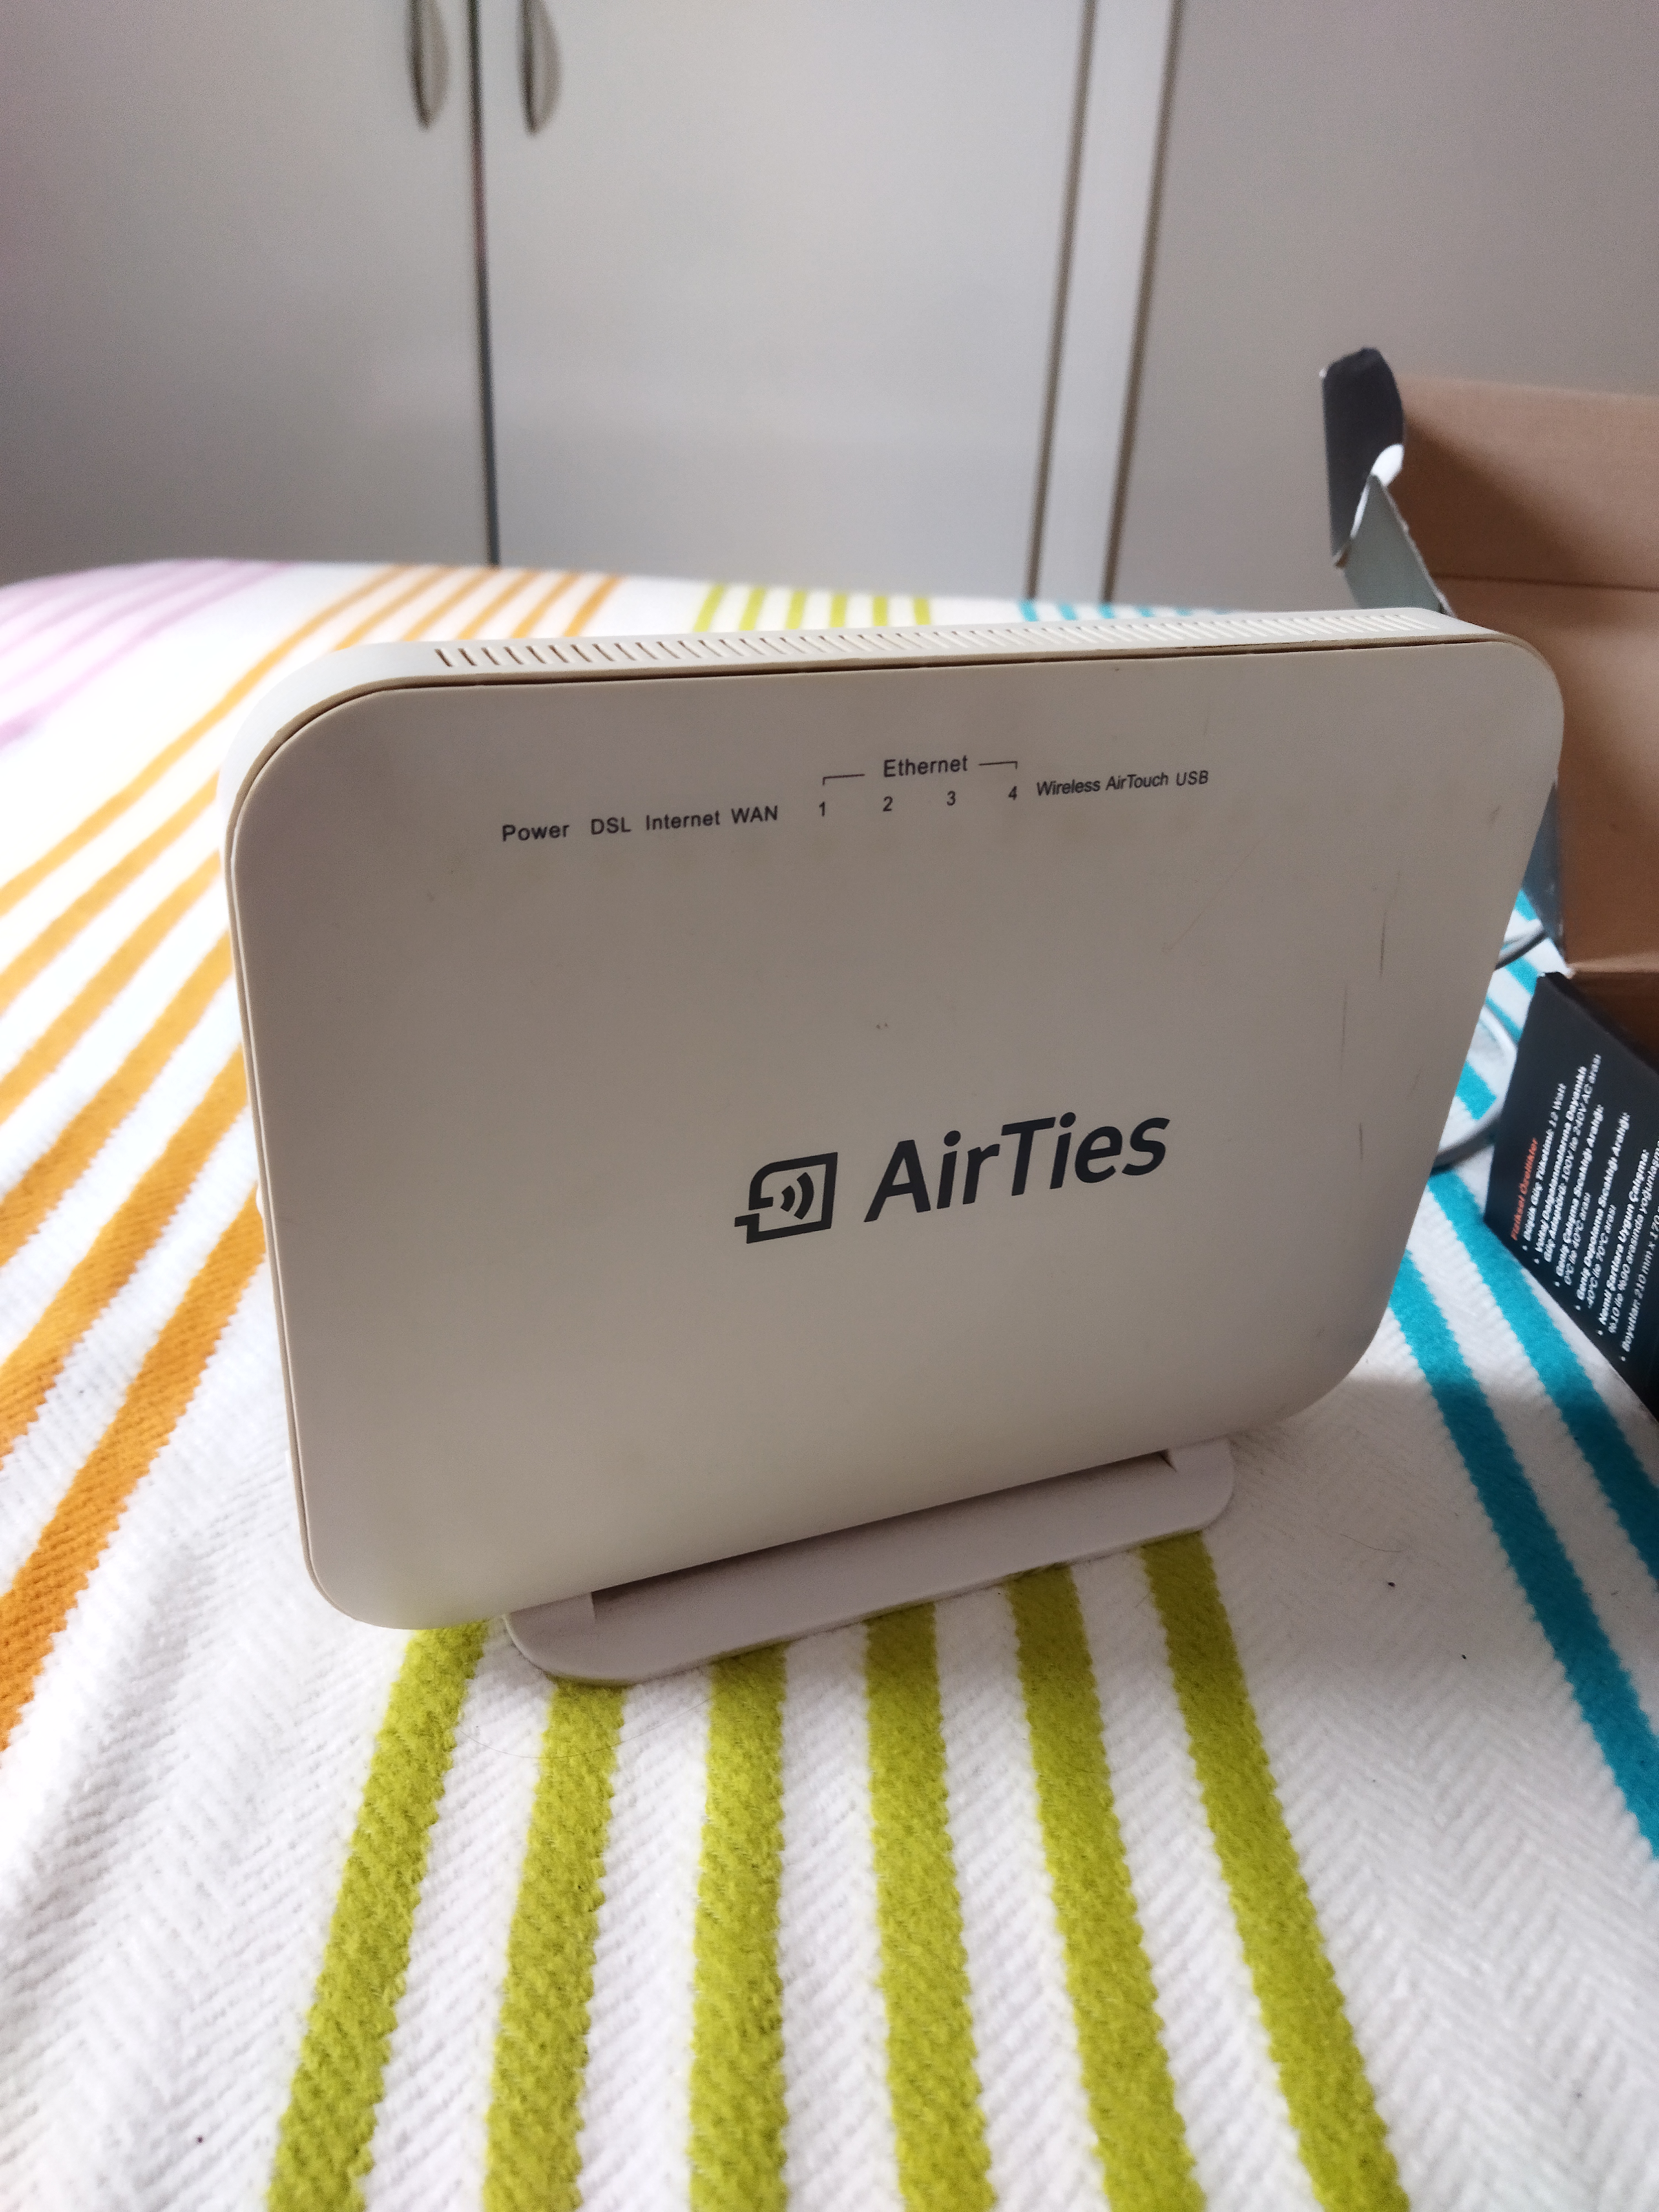 Satılık Airties Air 5650 ADSL2+/VDSL2/Fiber Modem | DonanımHaber Forum